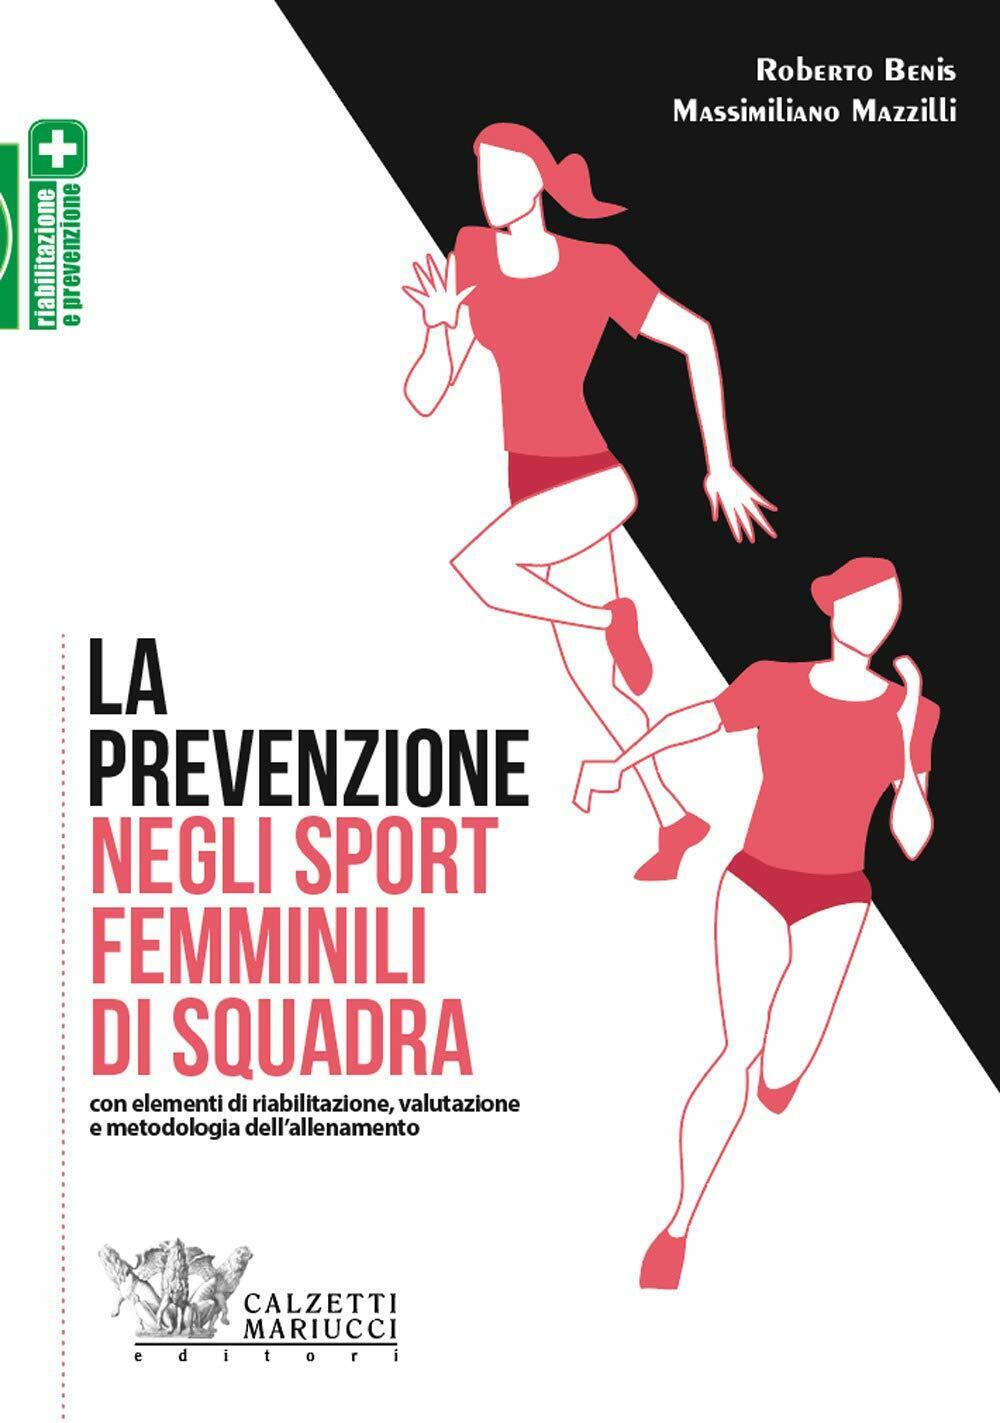 La prevenzione negli sport femminili di squadra - Benis,Mazzilli - 2019 libro usato